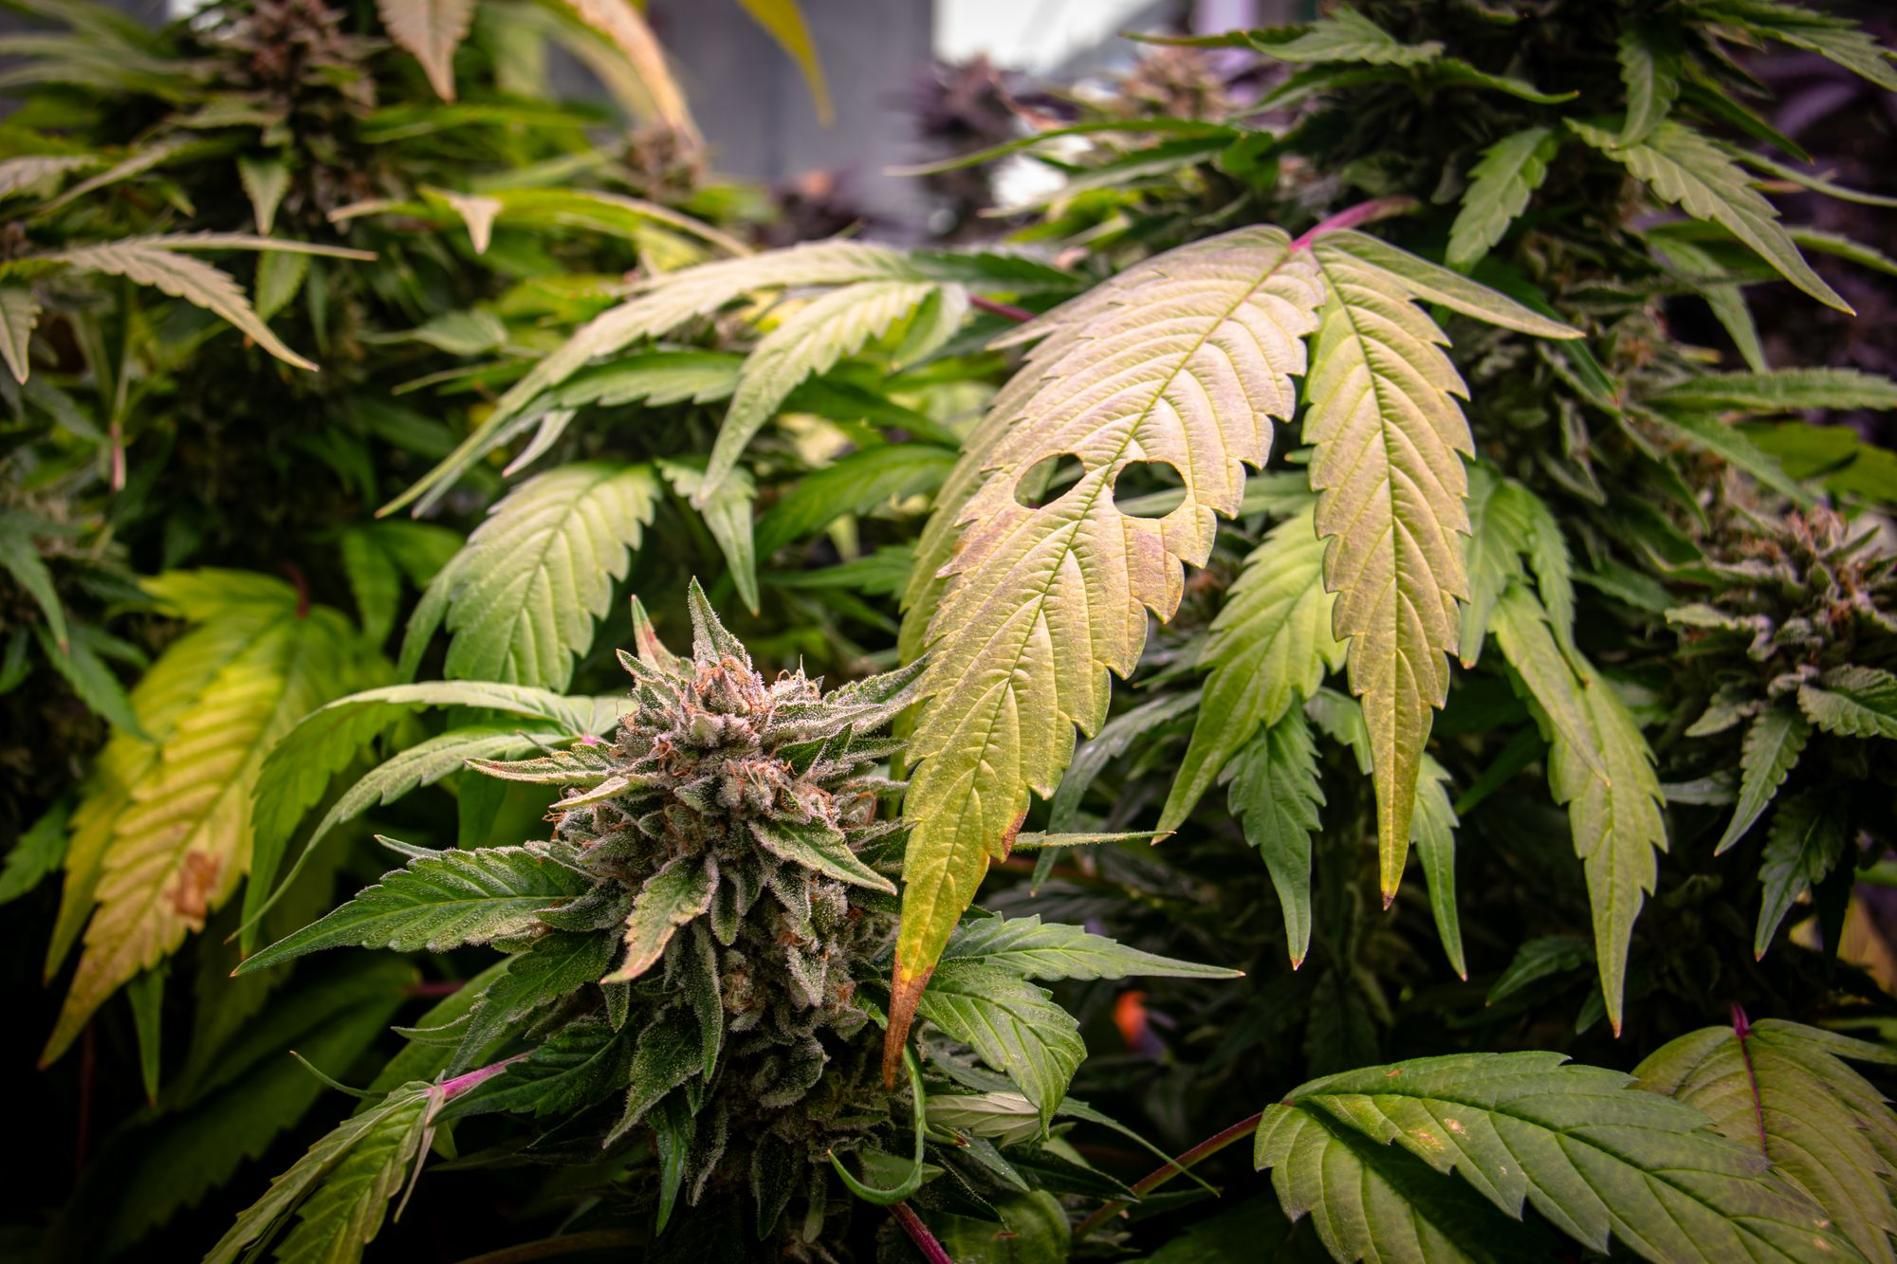 Baleares da los primeros pasos para producir cannabis medicinal